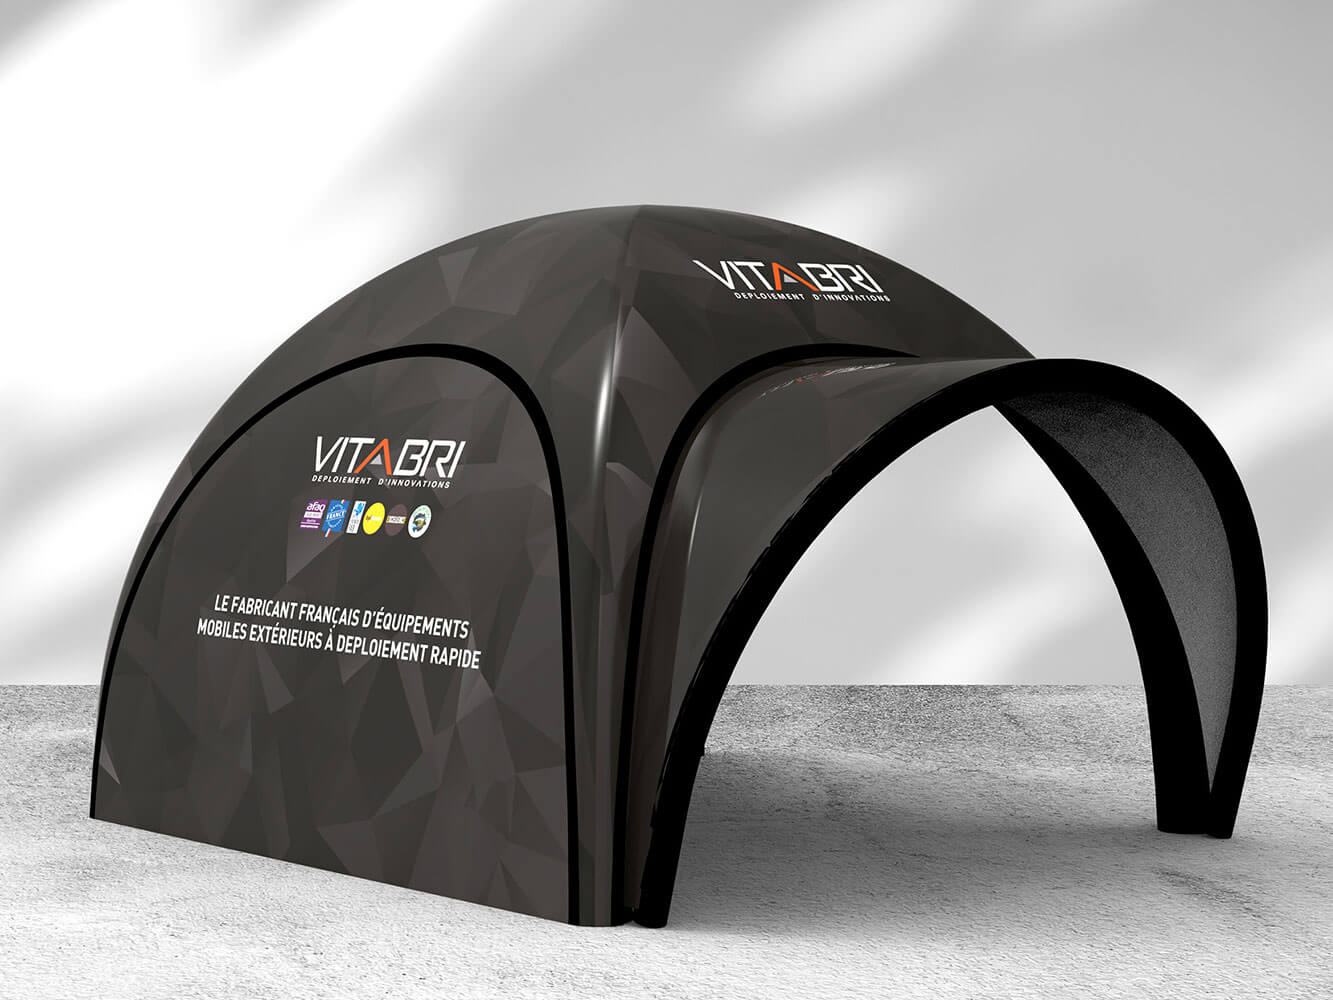 Tente paddock personnalisable de qualité professionnelle - modèle v2 vitabri